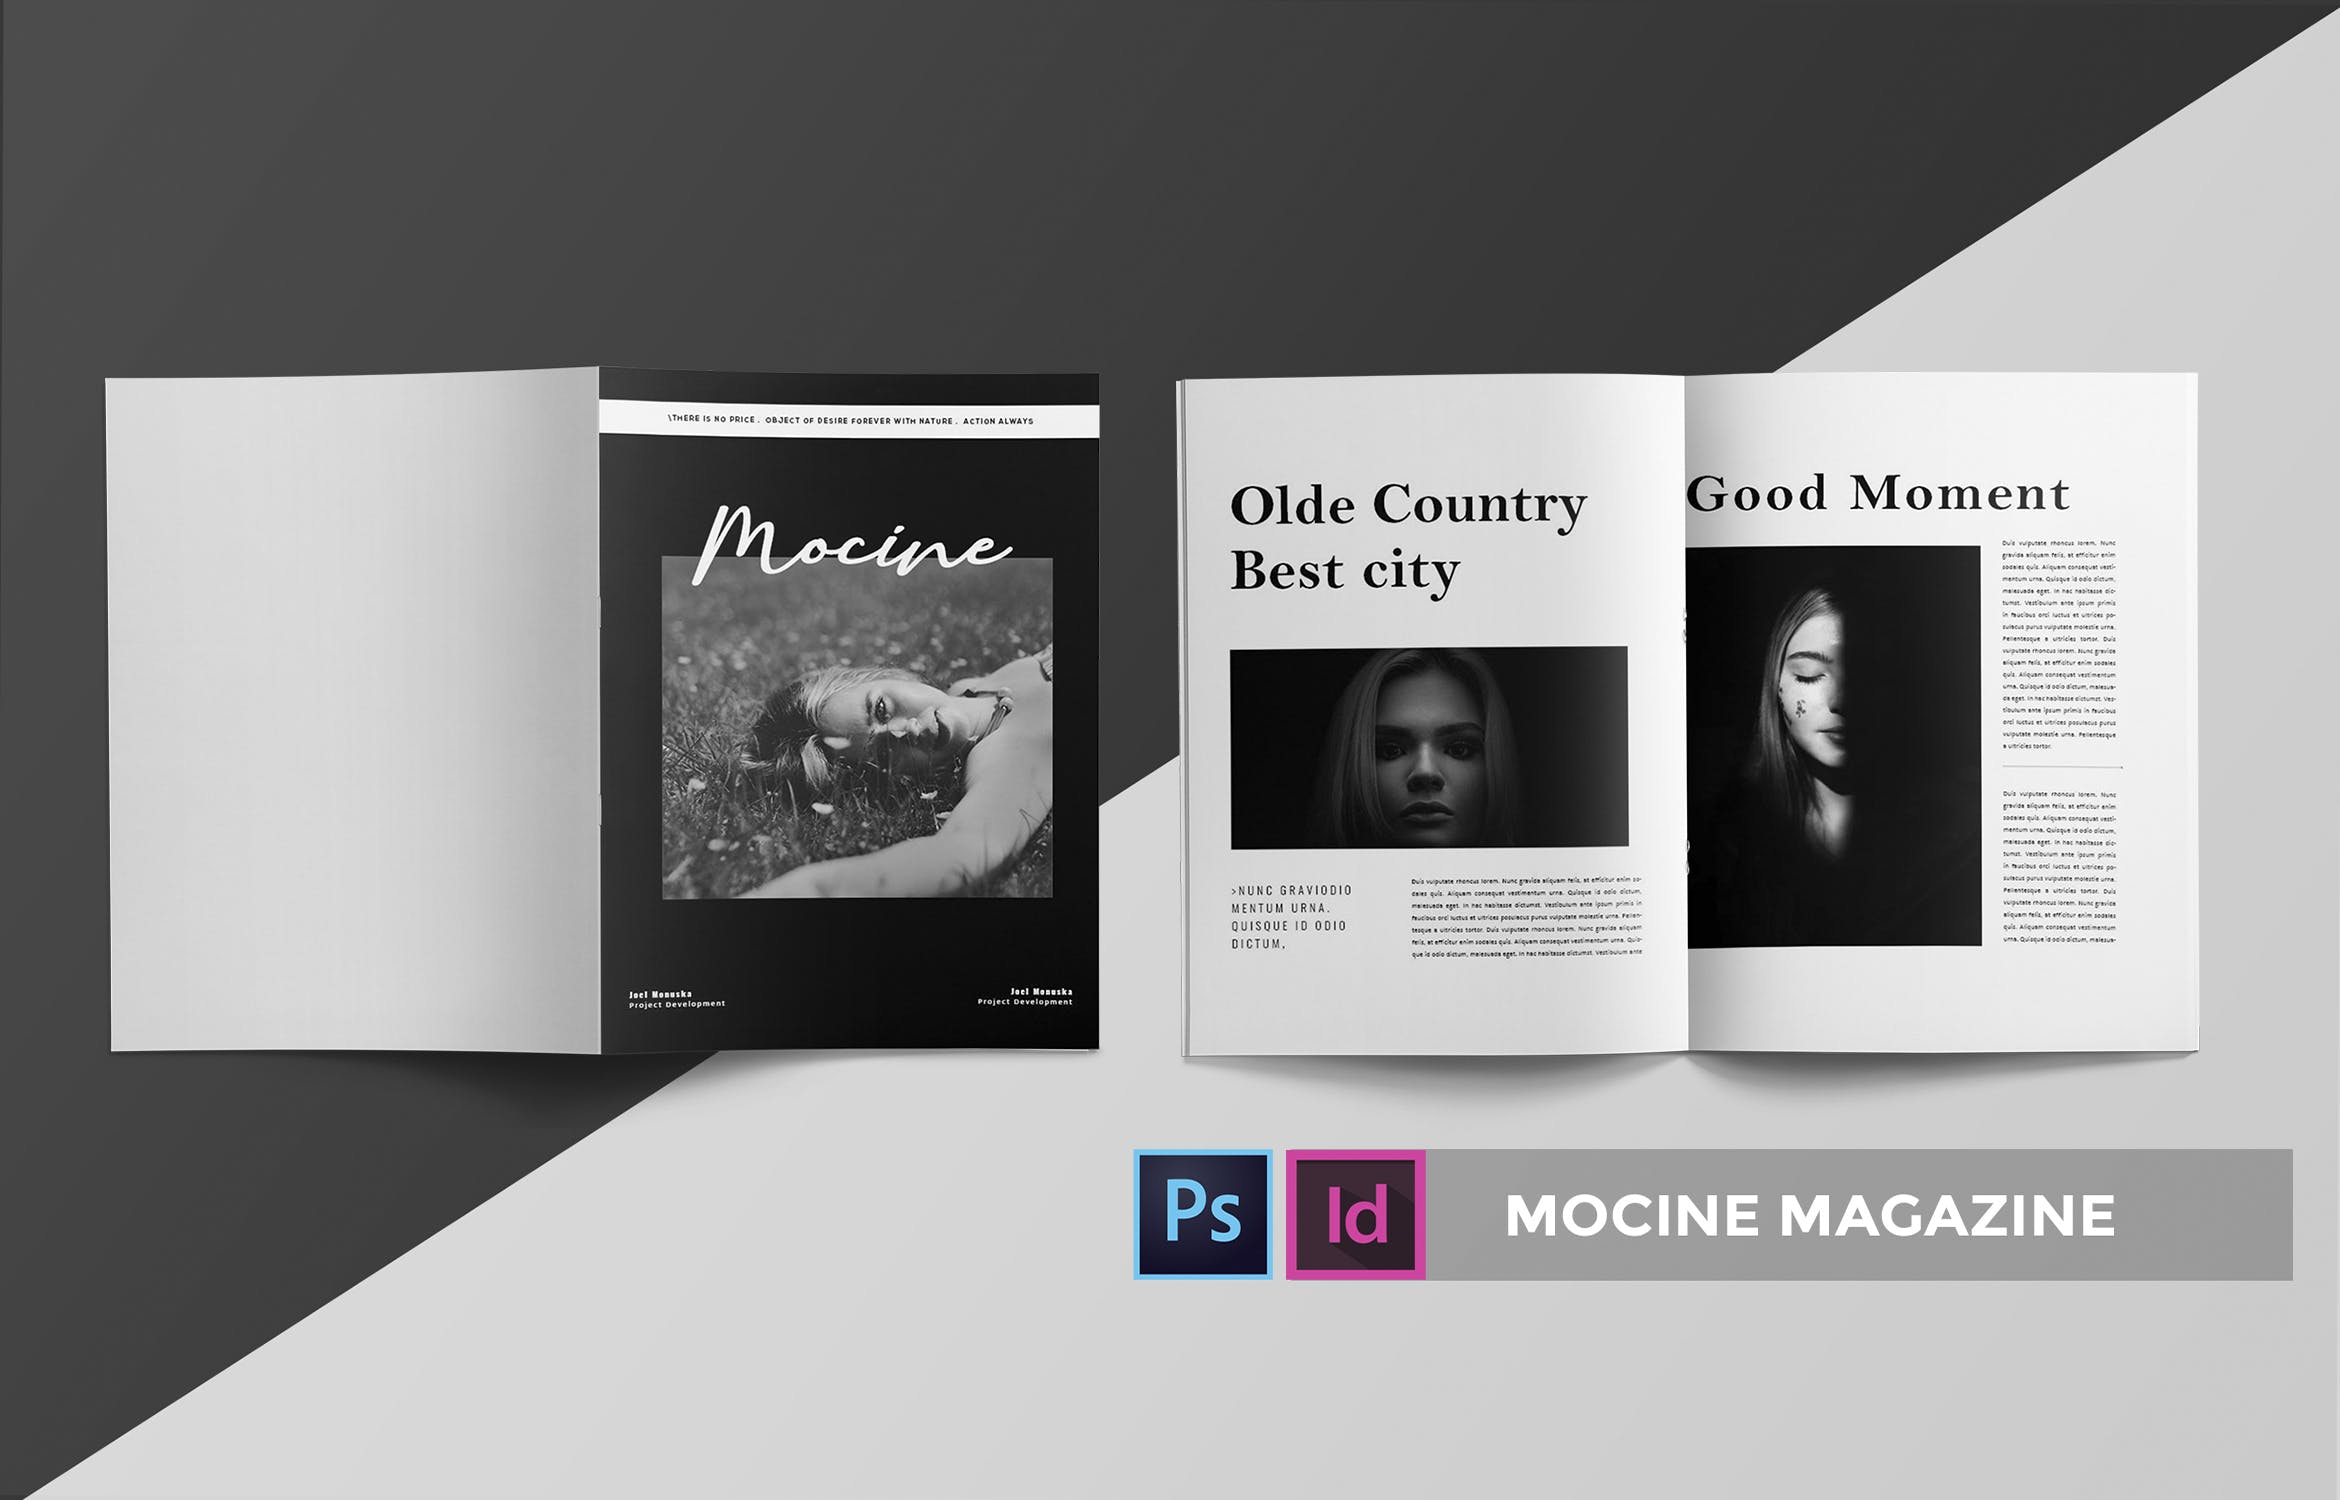 高端人物/摄影/时尚主题16图库精选杂志版式排版设计INDD模板 Mocine | Magazine Template插图(2)